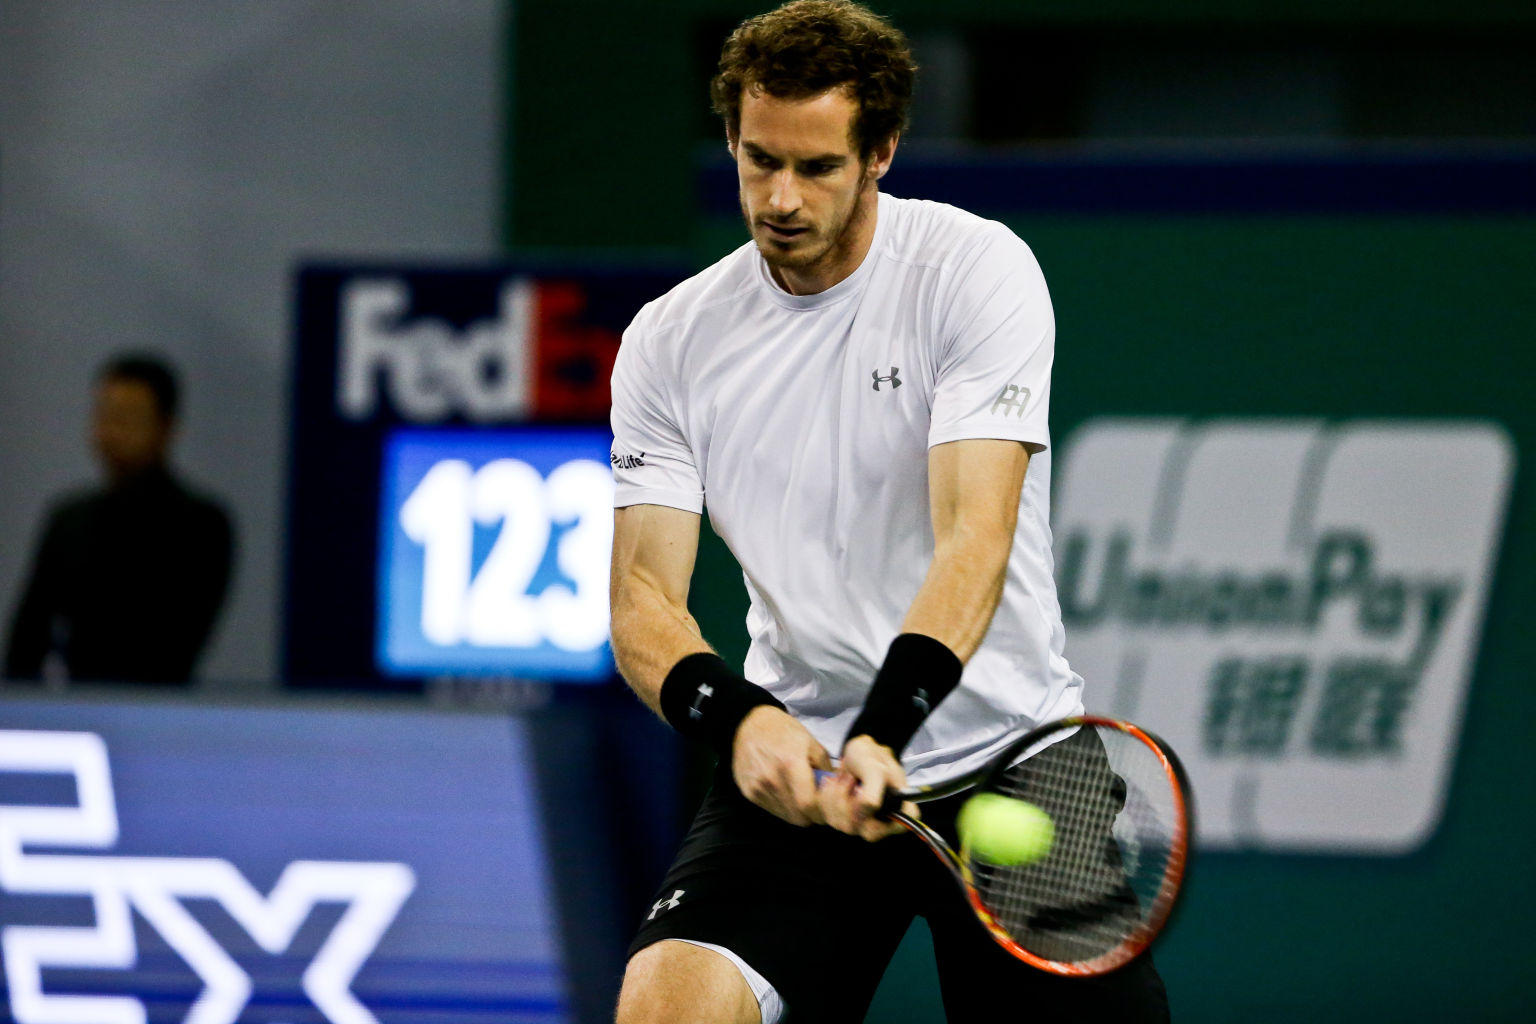 SHANGHAI, CHINA - 17. Oktober: Murray retourniert einen Schlag des Serben Djokovic während des Halbfinales in Shanghai.